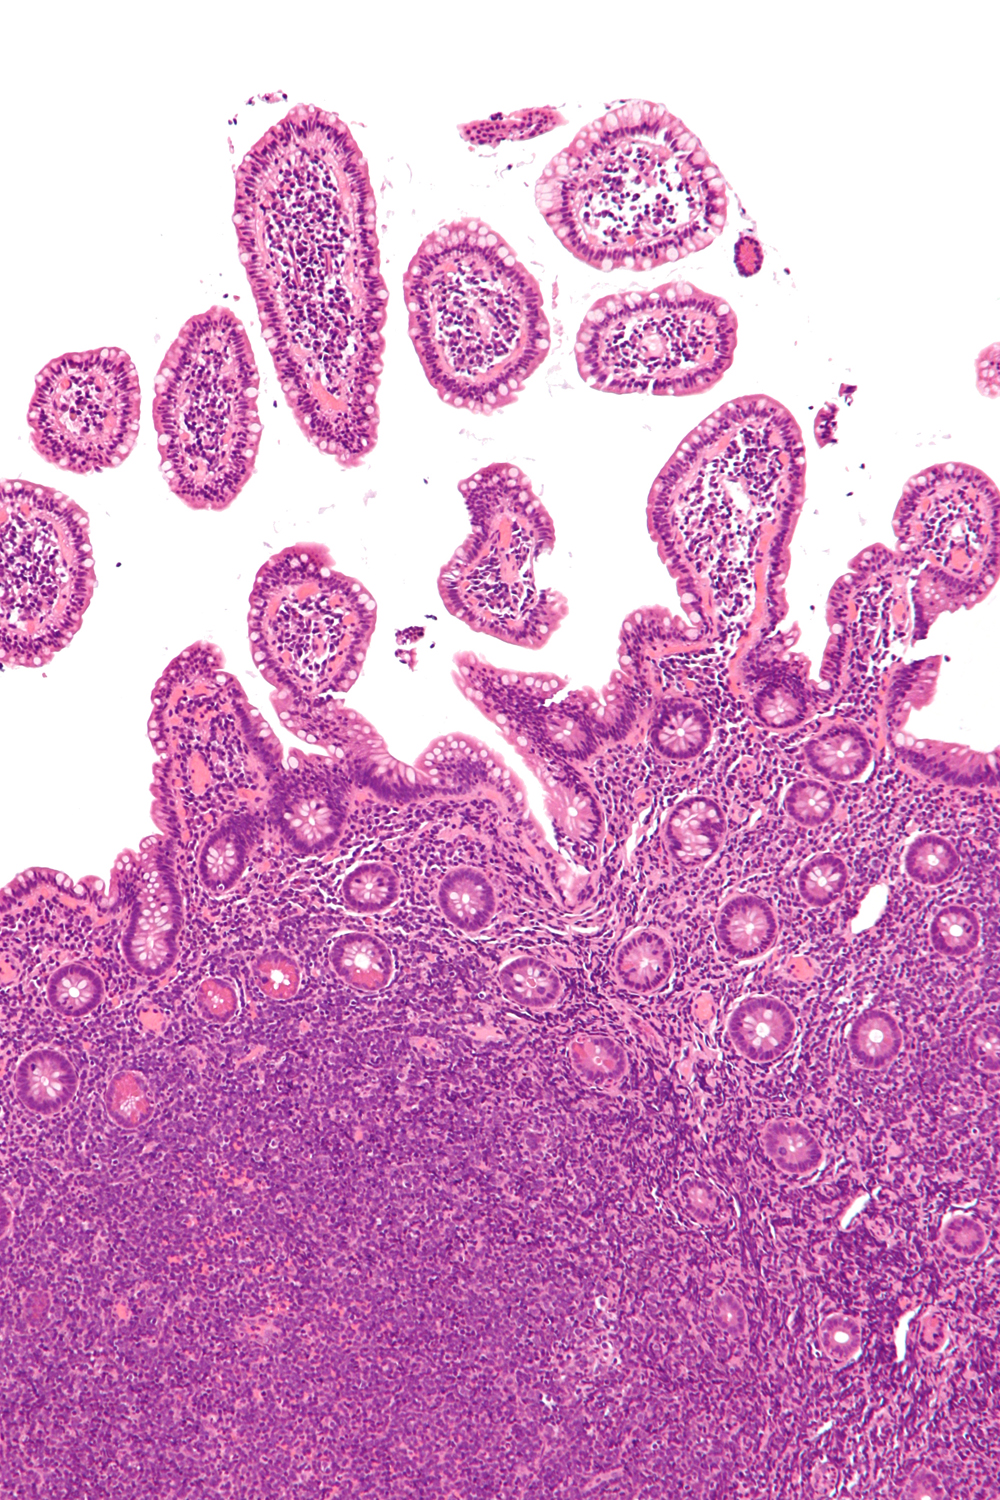 Micrografía de un linfoma de células del manto (zona inferior de la imagen) Autor/a: Nephron Fuente: Wikipedia